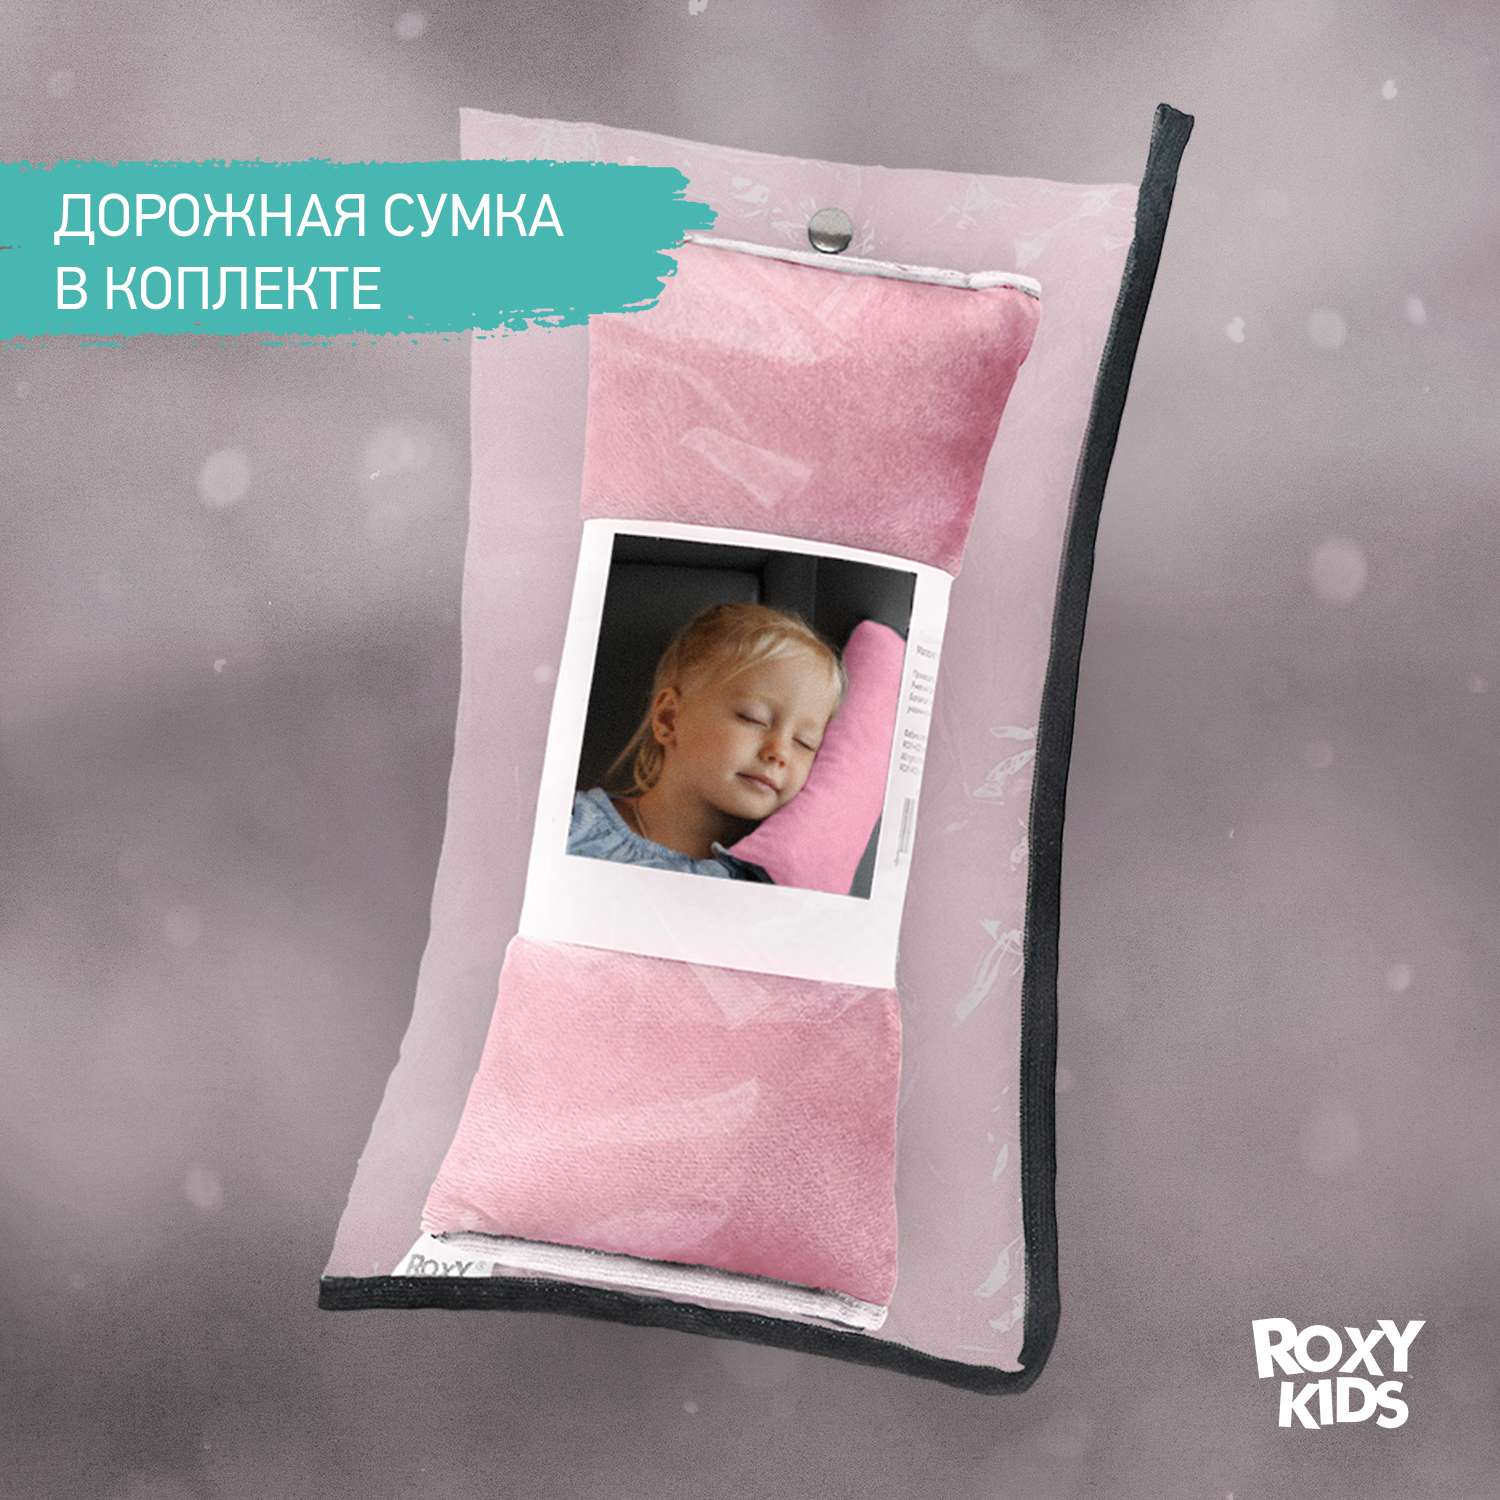 Подушка автомобильная детская ROXY-KIDS для путешествий в дорогу цвет фламинго - фото 5